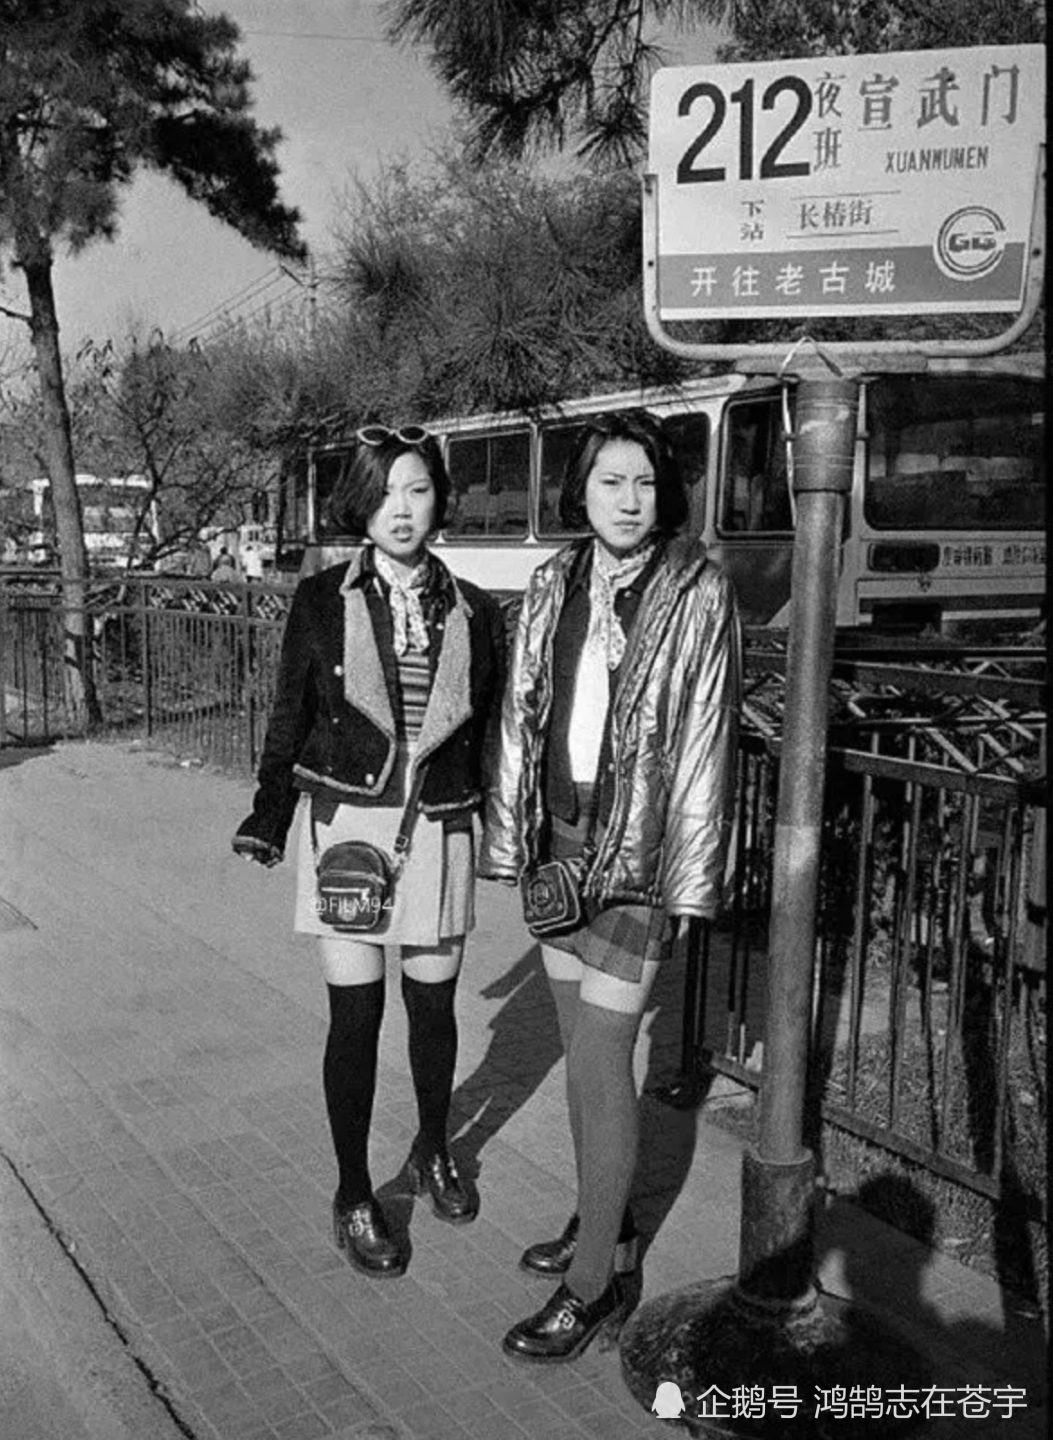 时髦九十年代印记,北京站台的时尚妹时髦靓丽,几位大叔翻看美女挂历